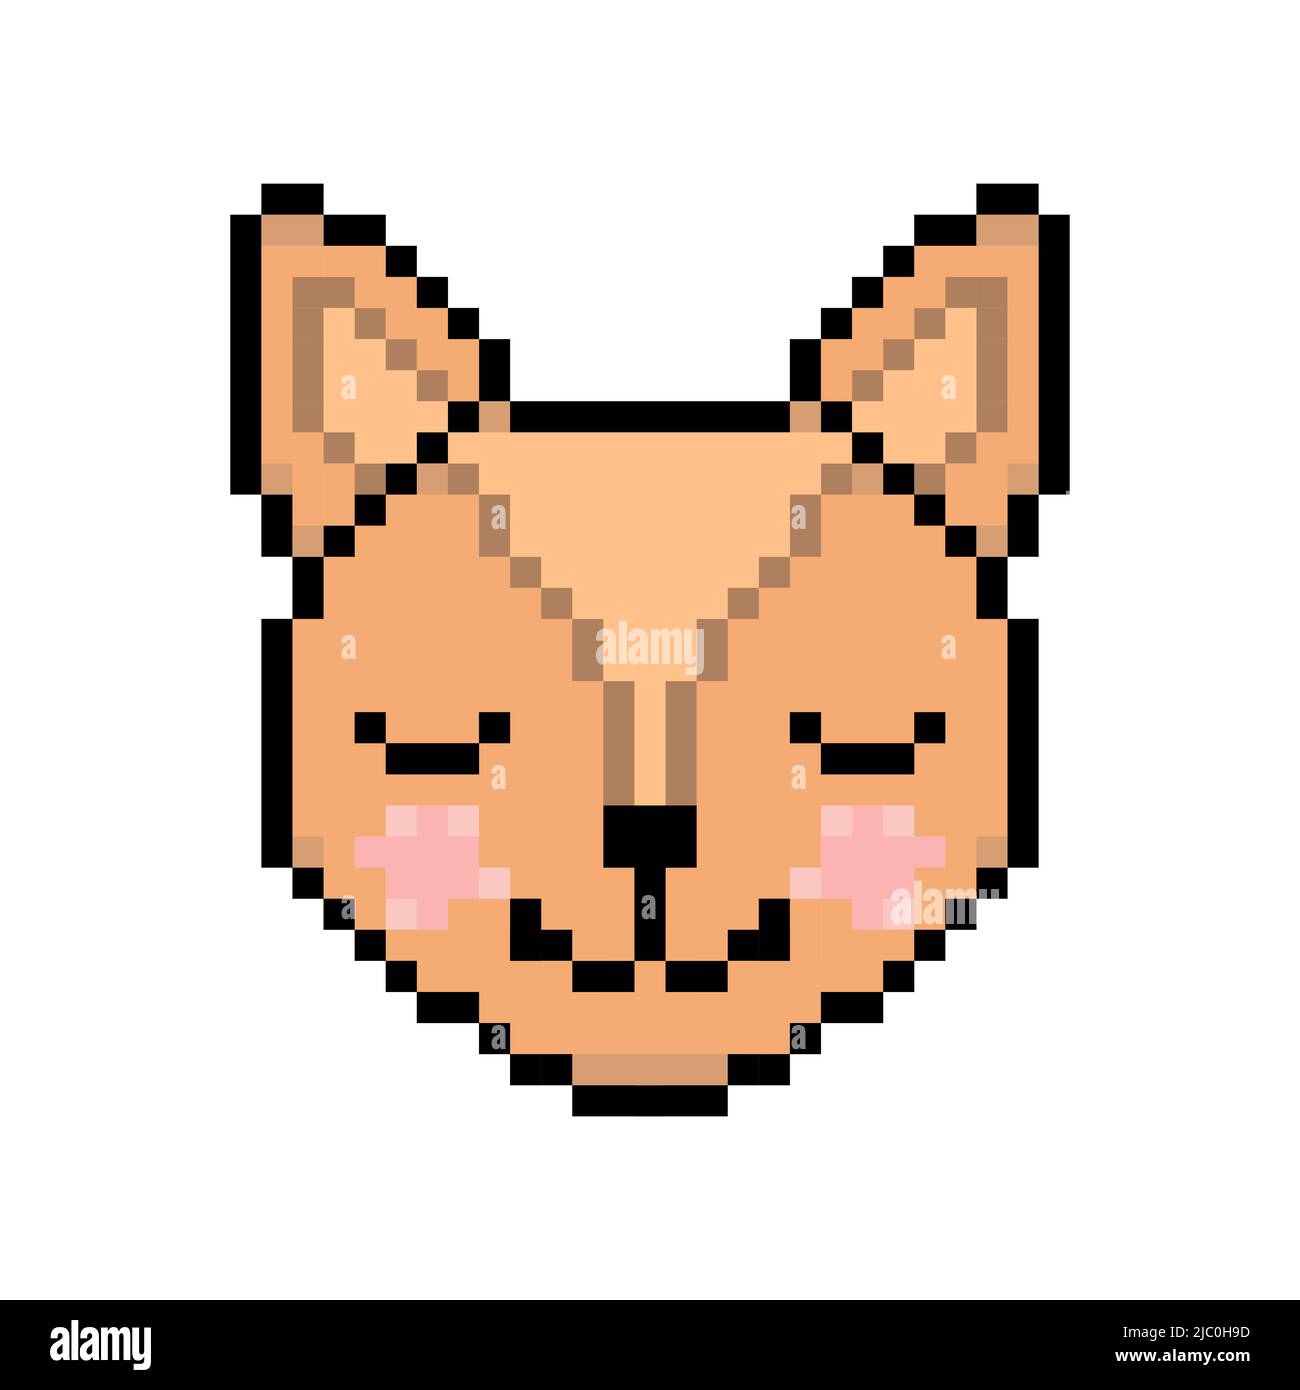 Making a pixel art of a kitten in HTML — Steemit